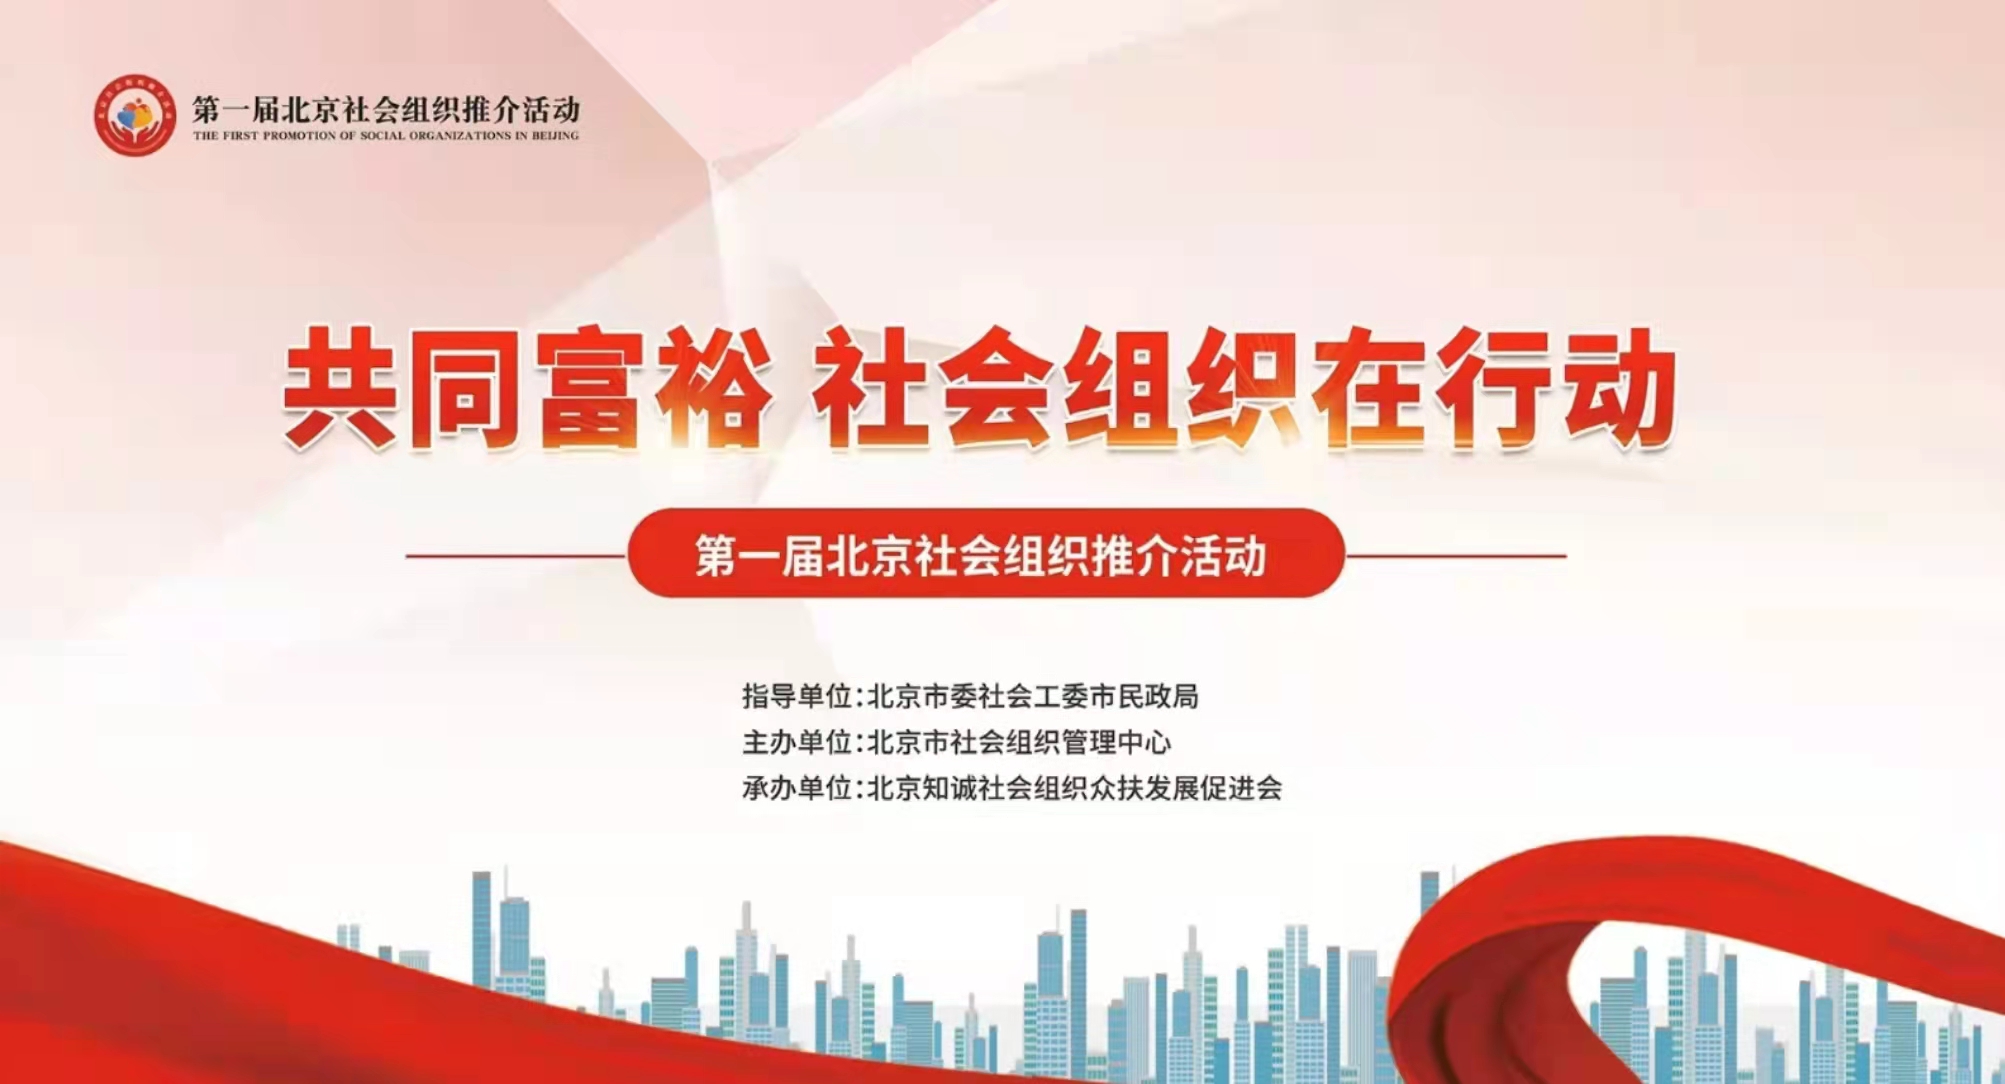 北京市快递协会参加第一届北京社会组织推介活动